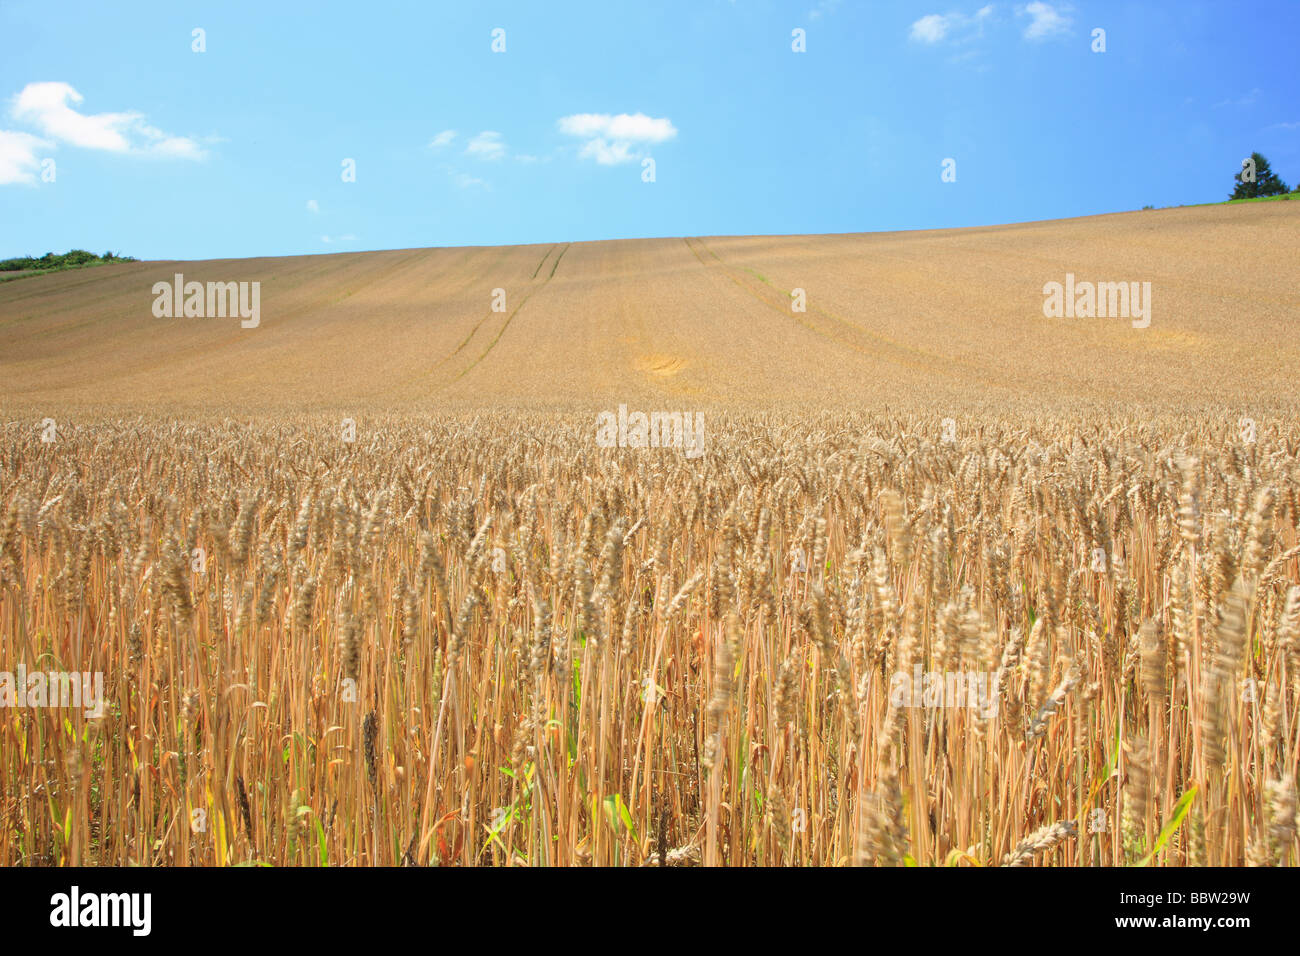 Los cultivos de trigo creciendo en un campo Foto de stock